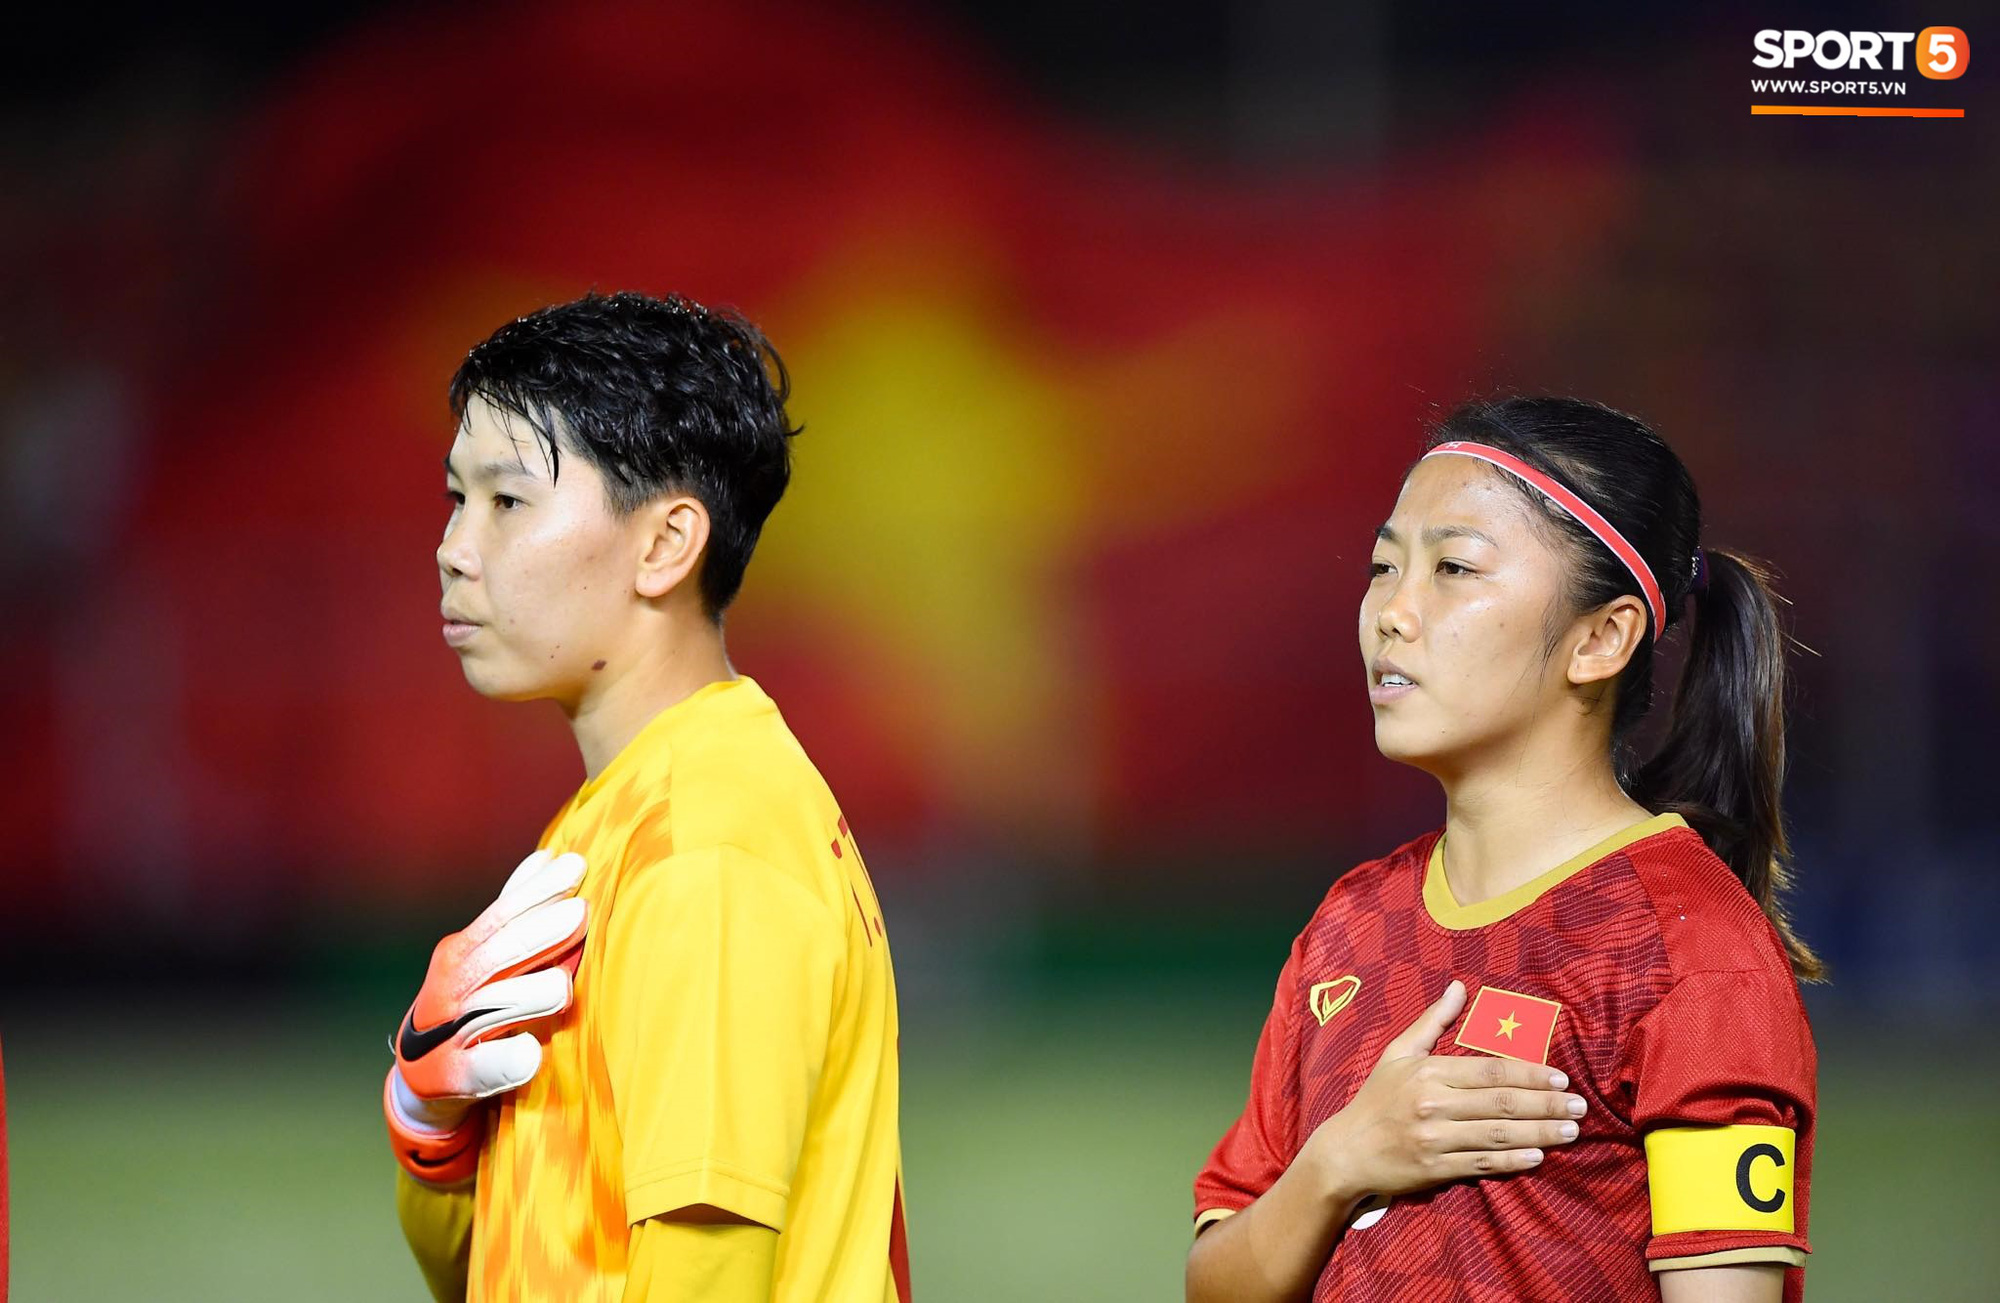 Đội trưởng tuyển nữ Việt Nam đổ gục xuống sân vì kiệt sức sau khi cùng đồng đội giành quyền vào chung kết SEA Games 30 - Ảnh 2.